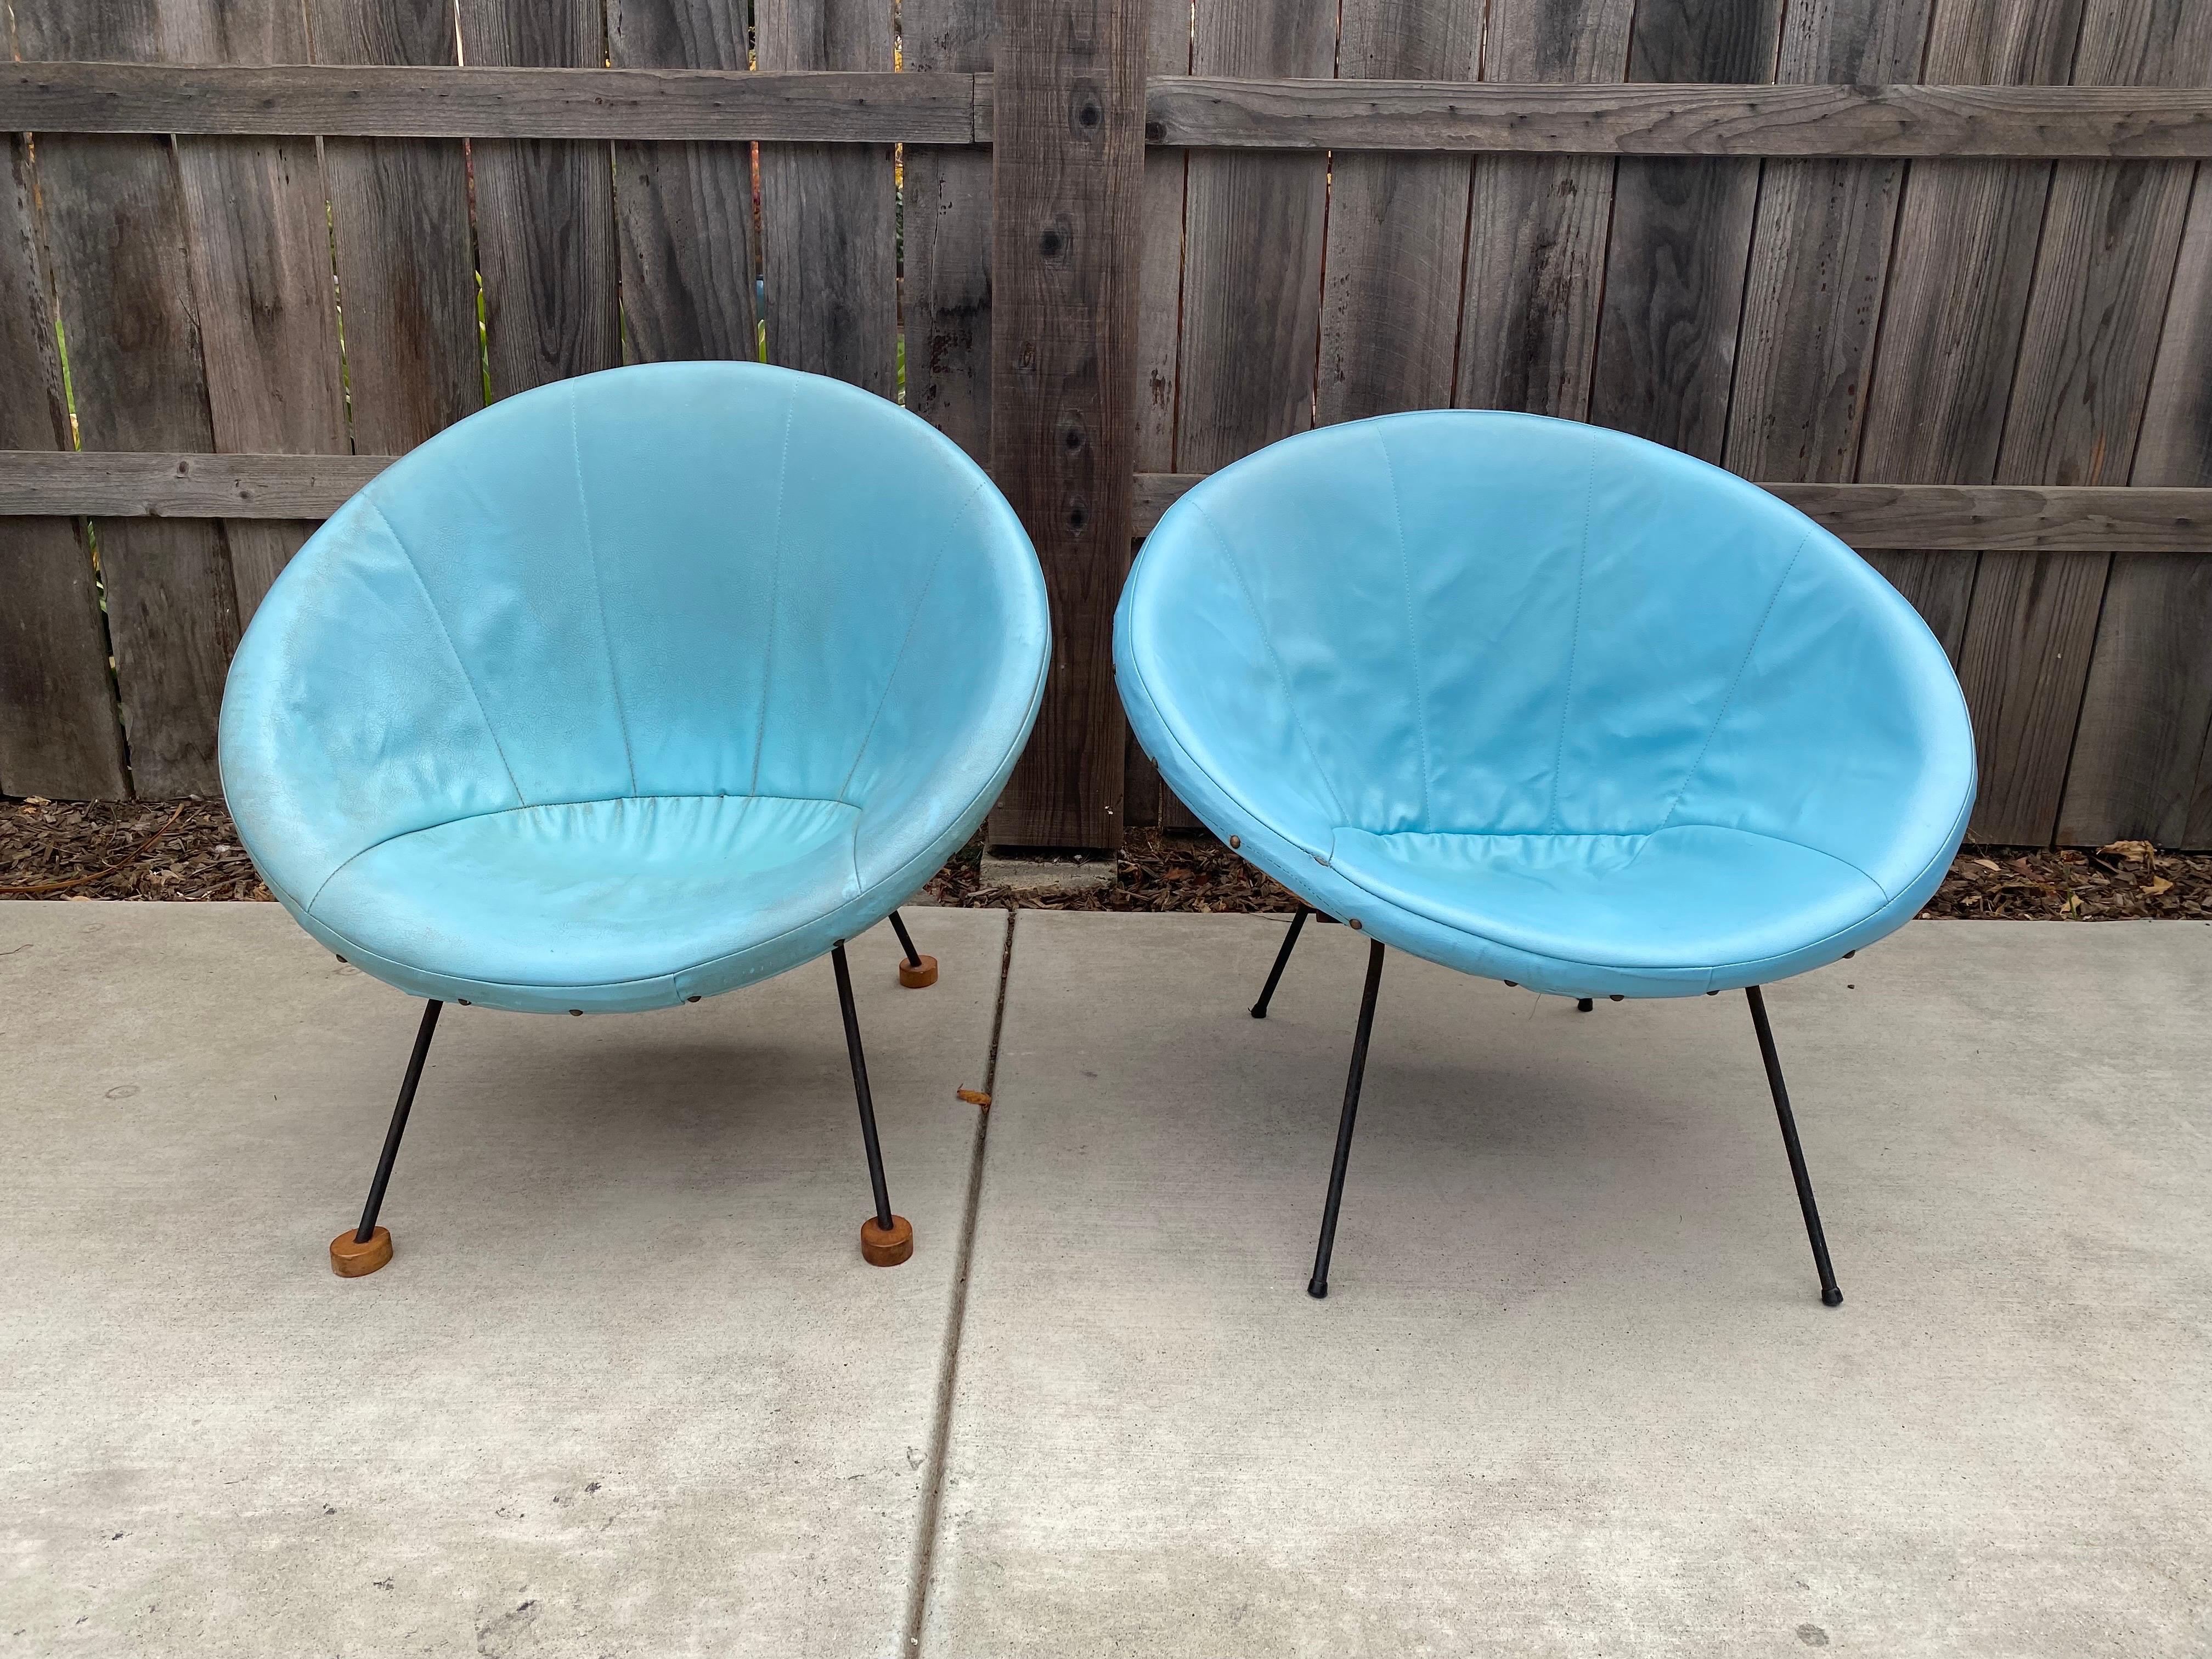 Zum Verkauf steht ein atemberaubendes Paar Rattan-Clubstühle, Scoop Chairs oder Beistellstühle aus der Mitte des Jahrhunderts, beide mit ihren originalen türkisfarbenen Kunstleder- oder Vinylsitzbezügen. Beide Stühle stehen auf einem gusseisernen